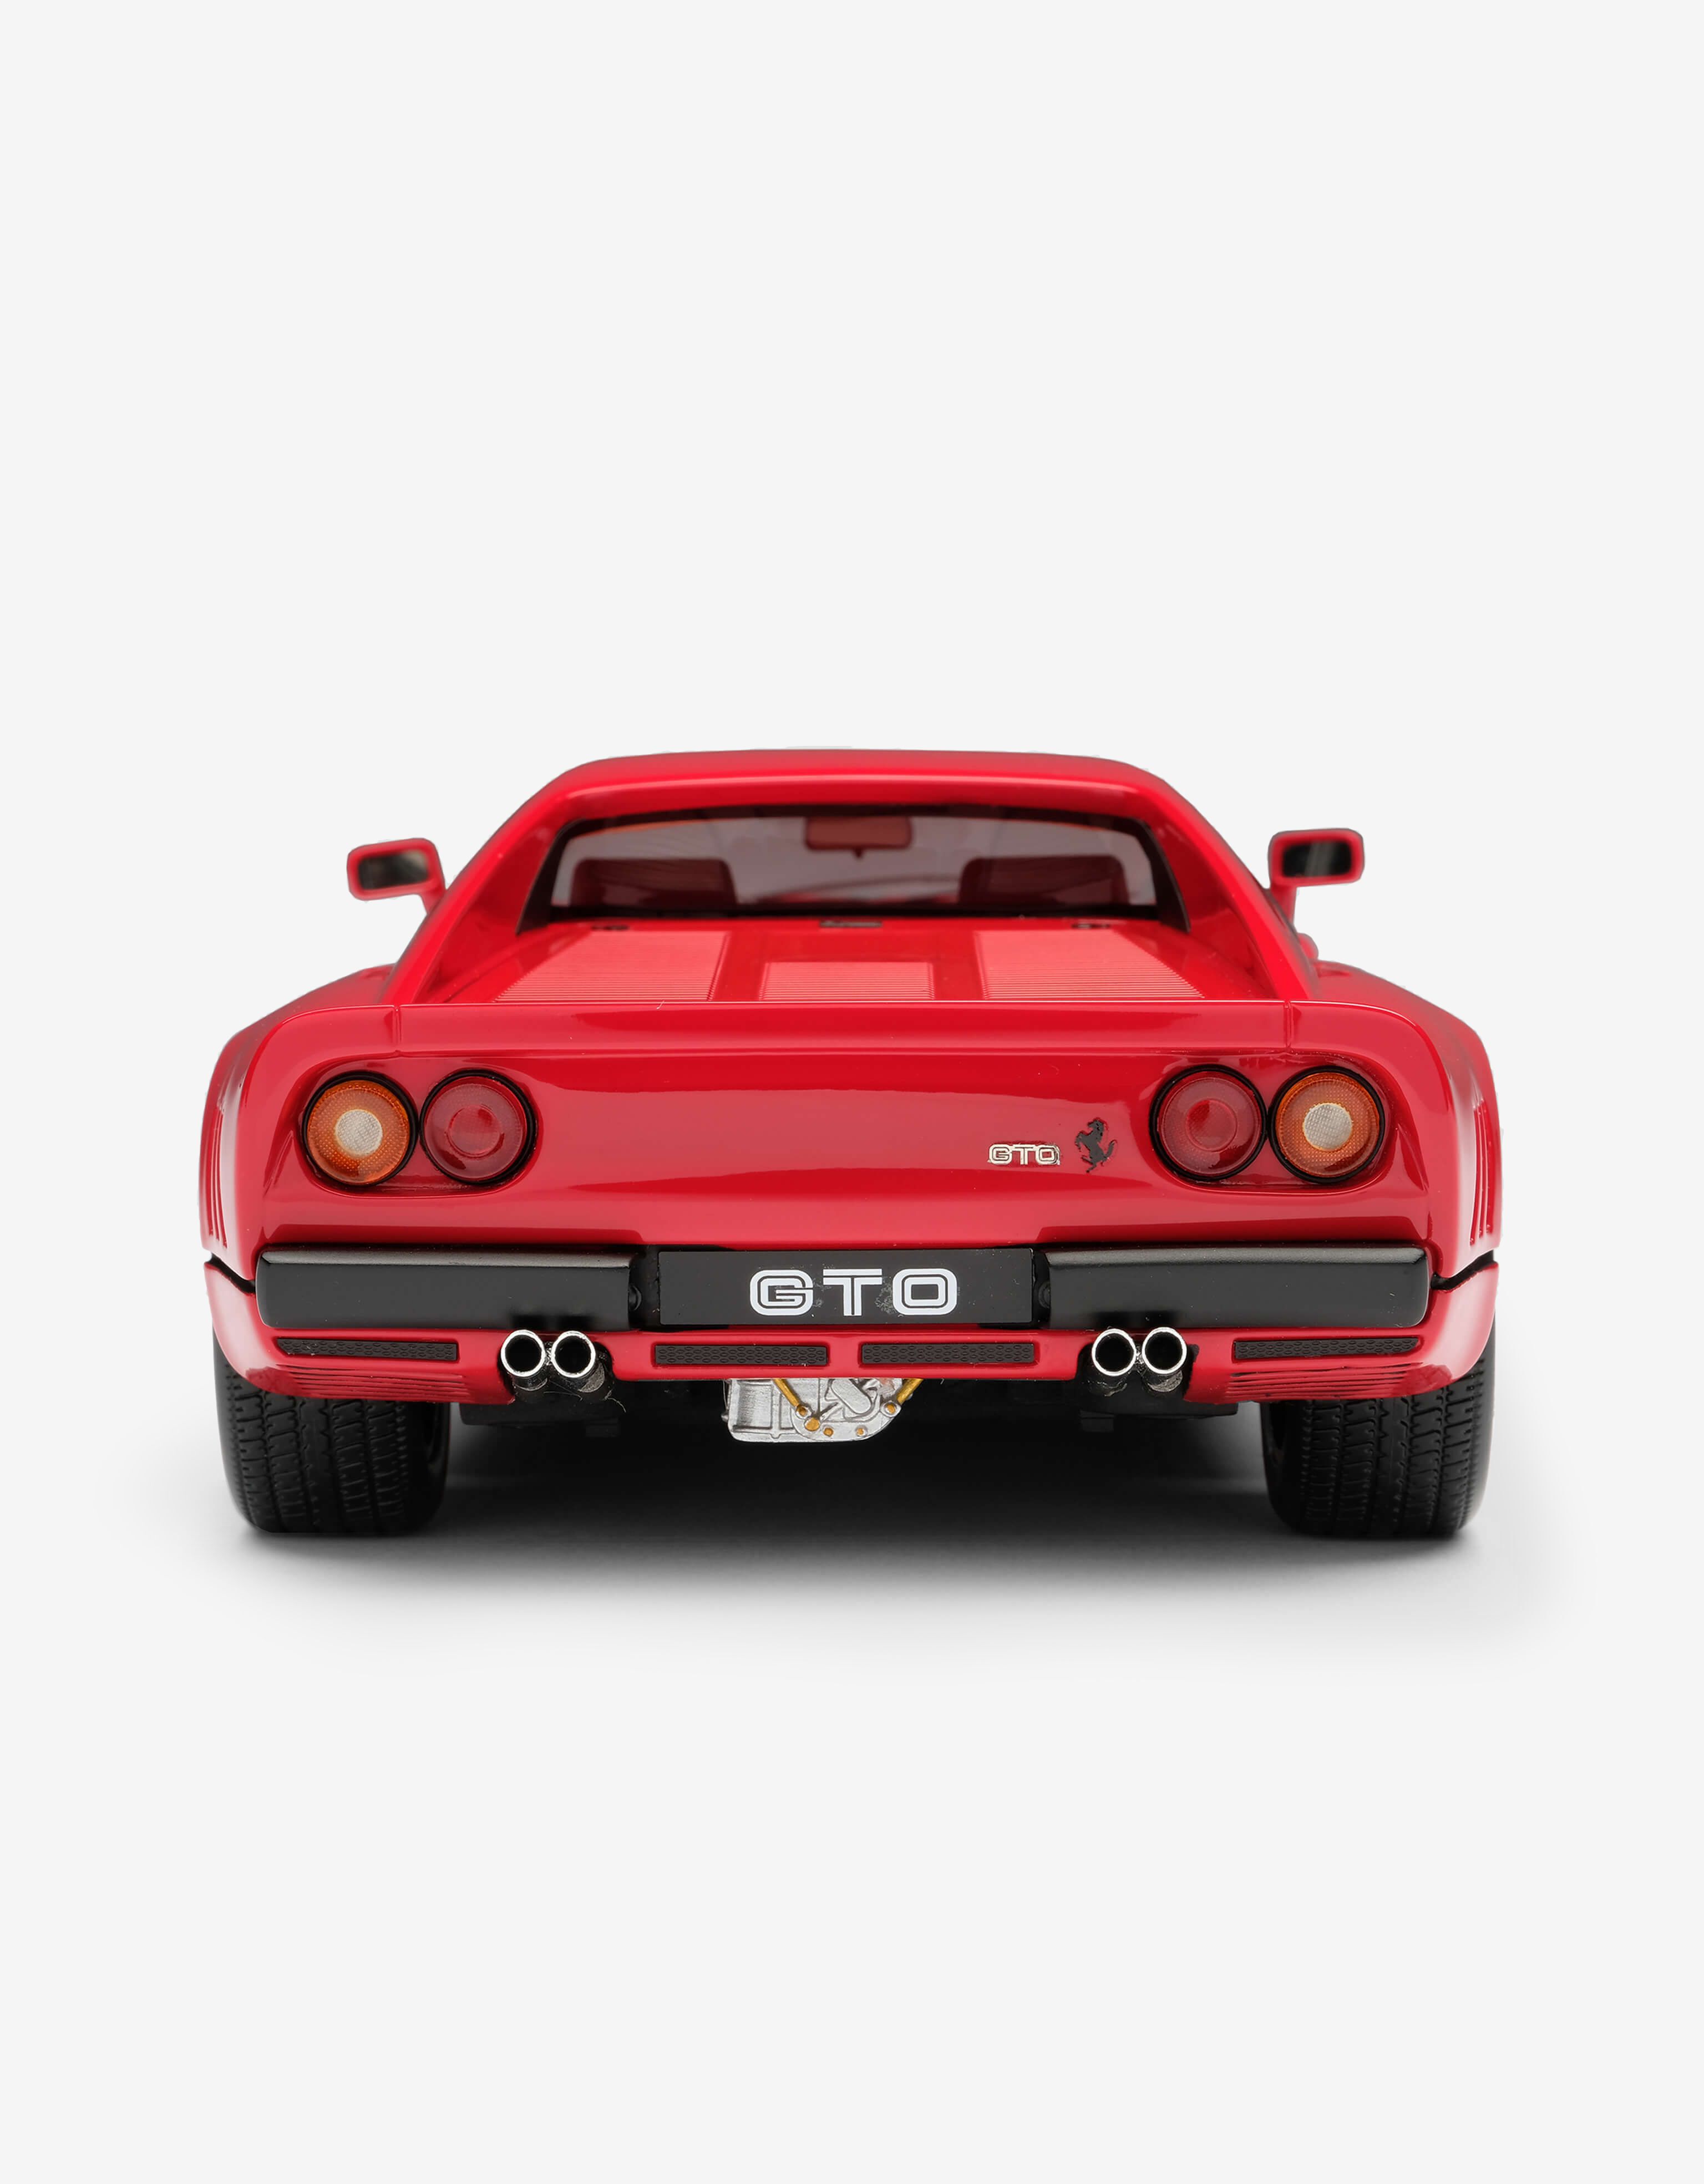 Ferrari Ferrari 288 GTO Le Mans モデルカー 1:18スケール レッド L7812f